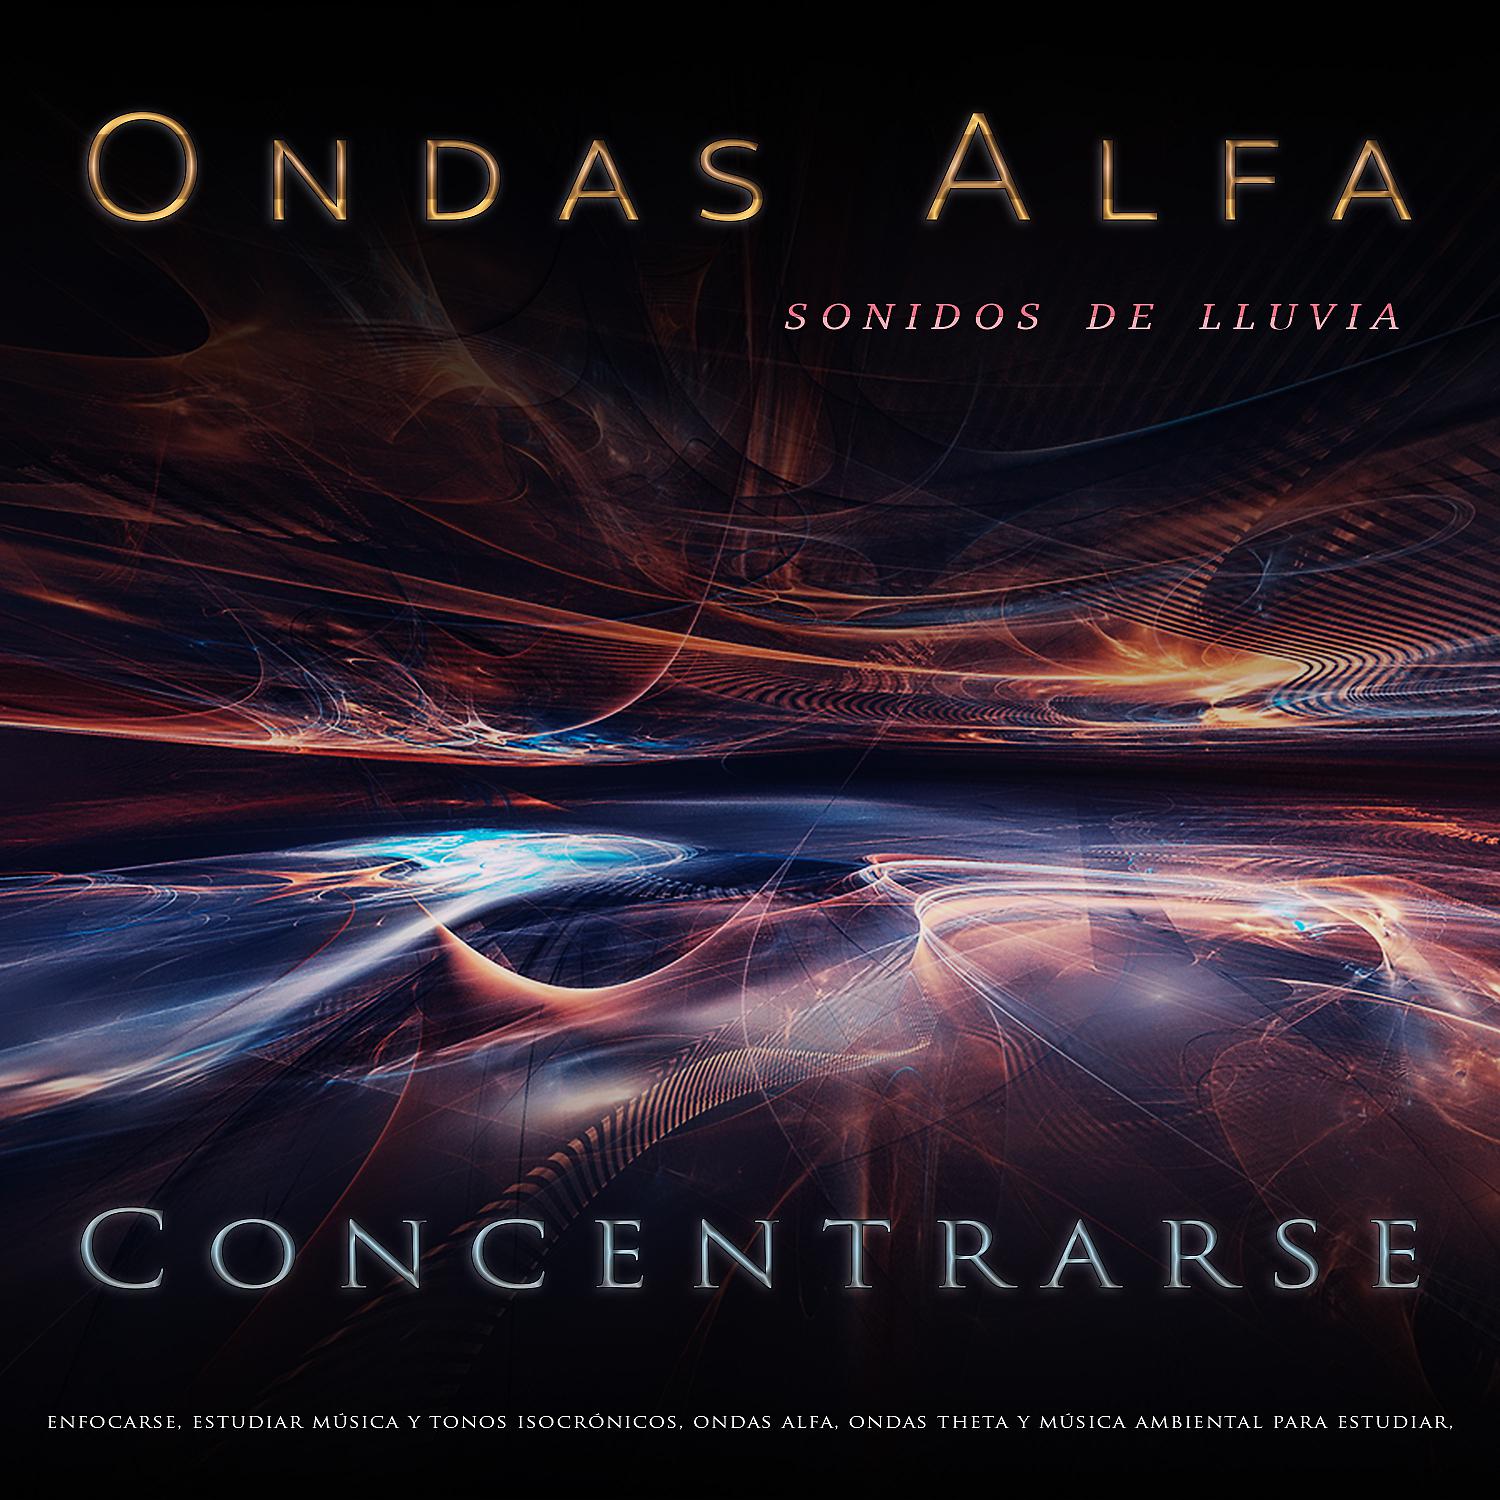 Постер альбома Ondas Alfa: Ritmos binaurales y sonidos de lluvia para concentrarse, enfocarse, estudiar música y tonos isocrónicos, ondas alfa, ondas theta y música ambiental para estudiar, música para leer y comprender